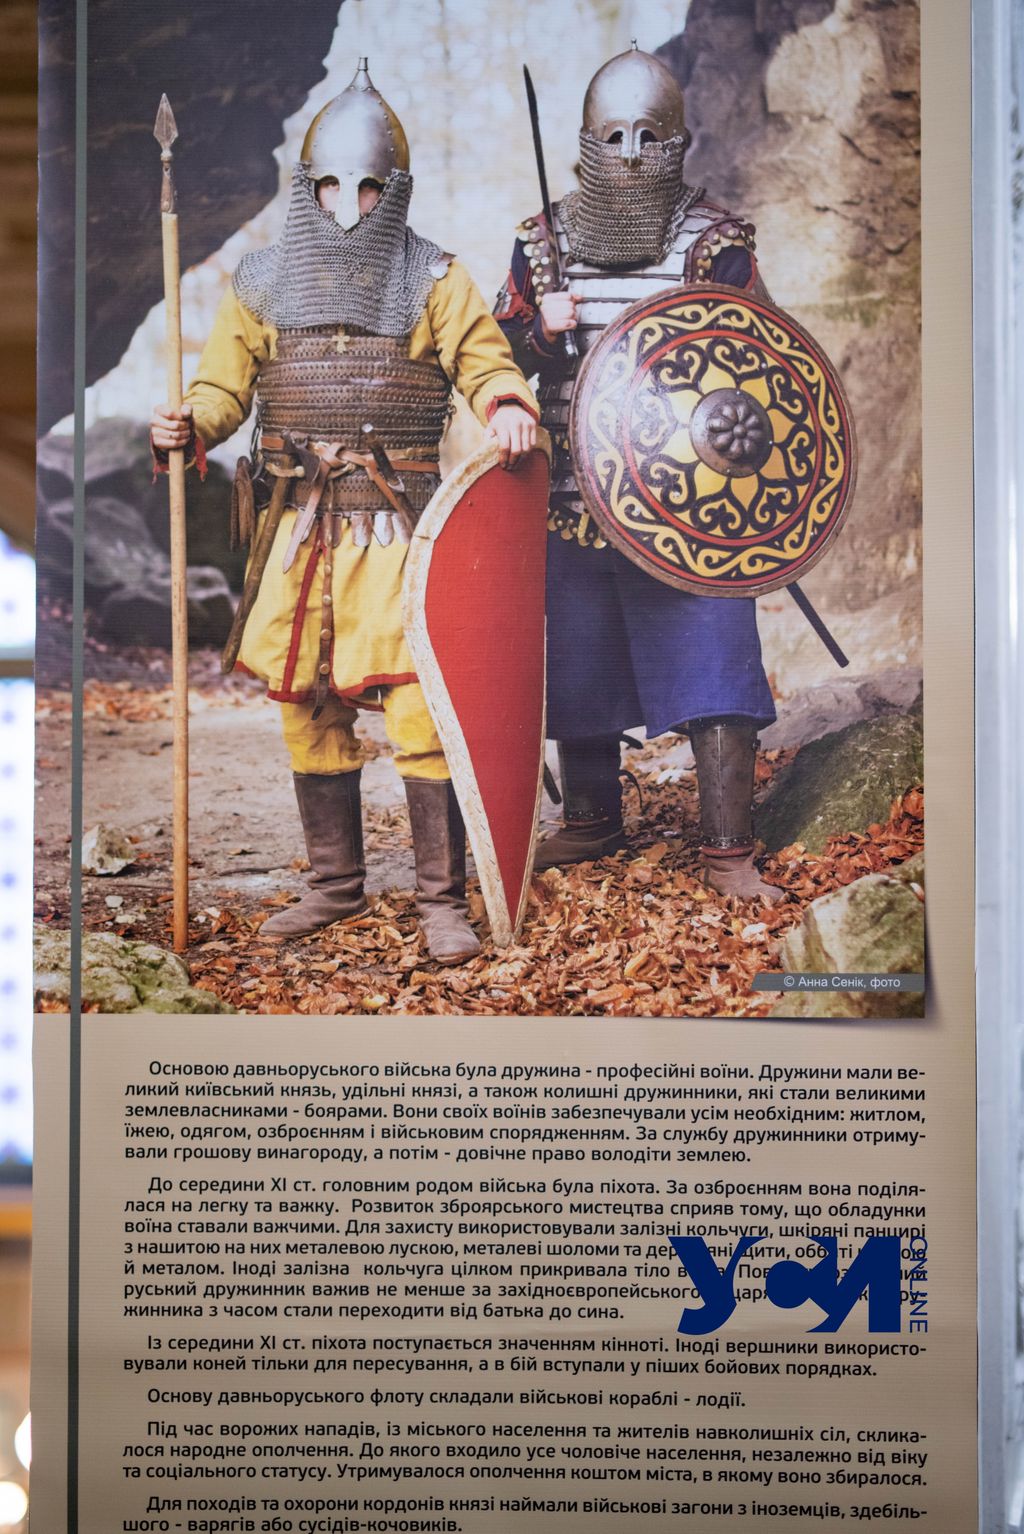 В Одессе открылась выставка об украинских воинах (фото, аудио). Читайте на  UKR.NET